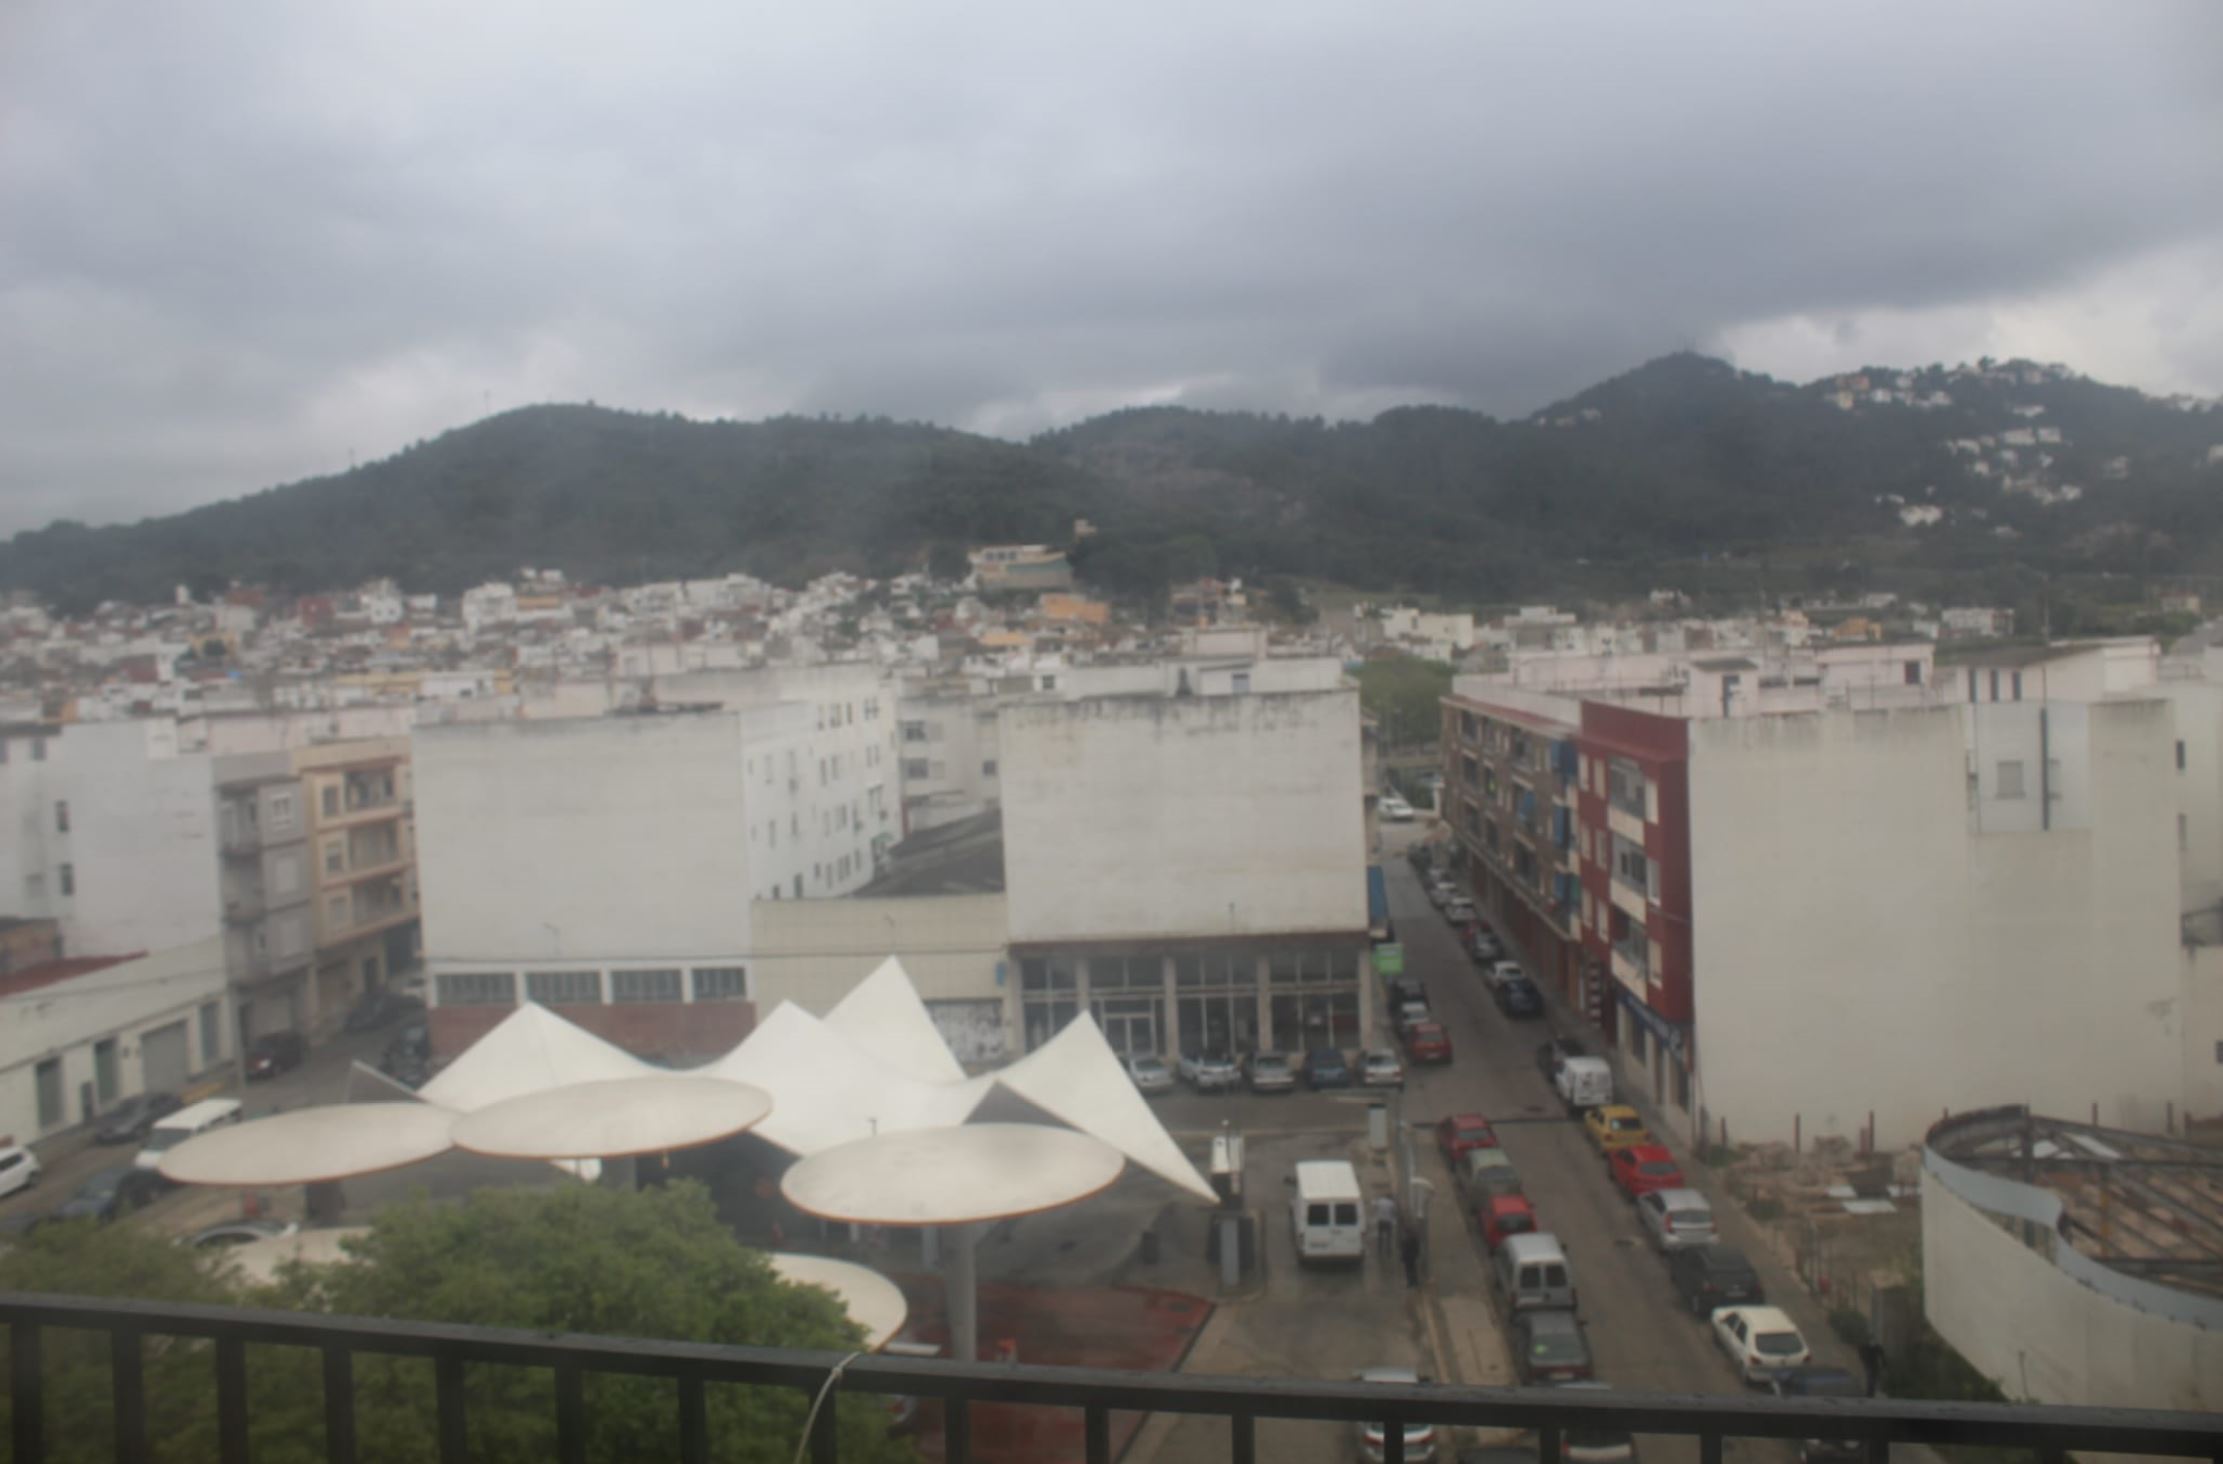 Apartment with views in Oliva Pueblo